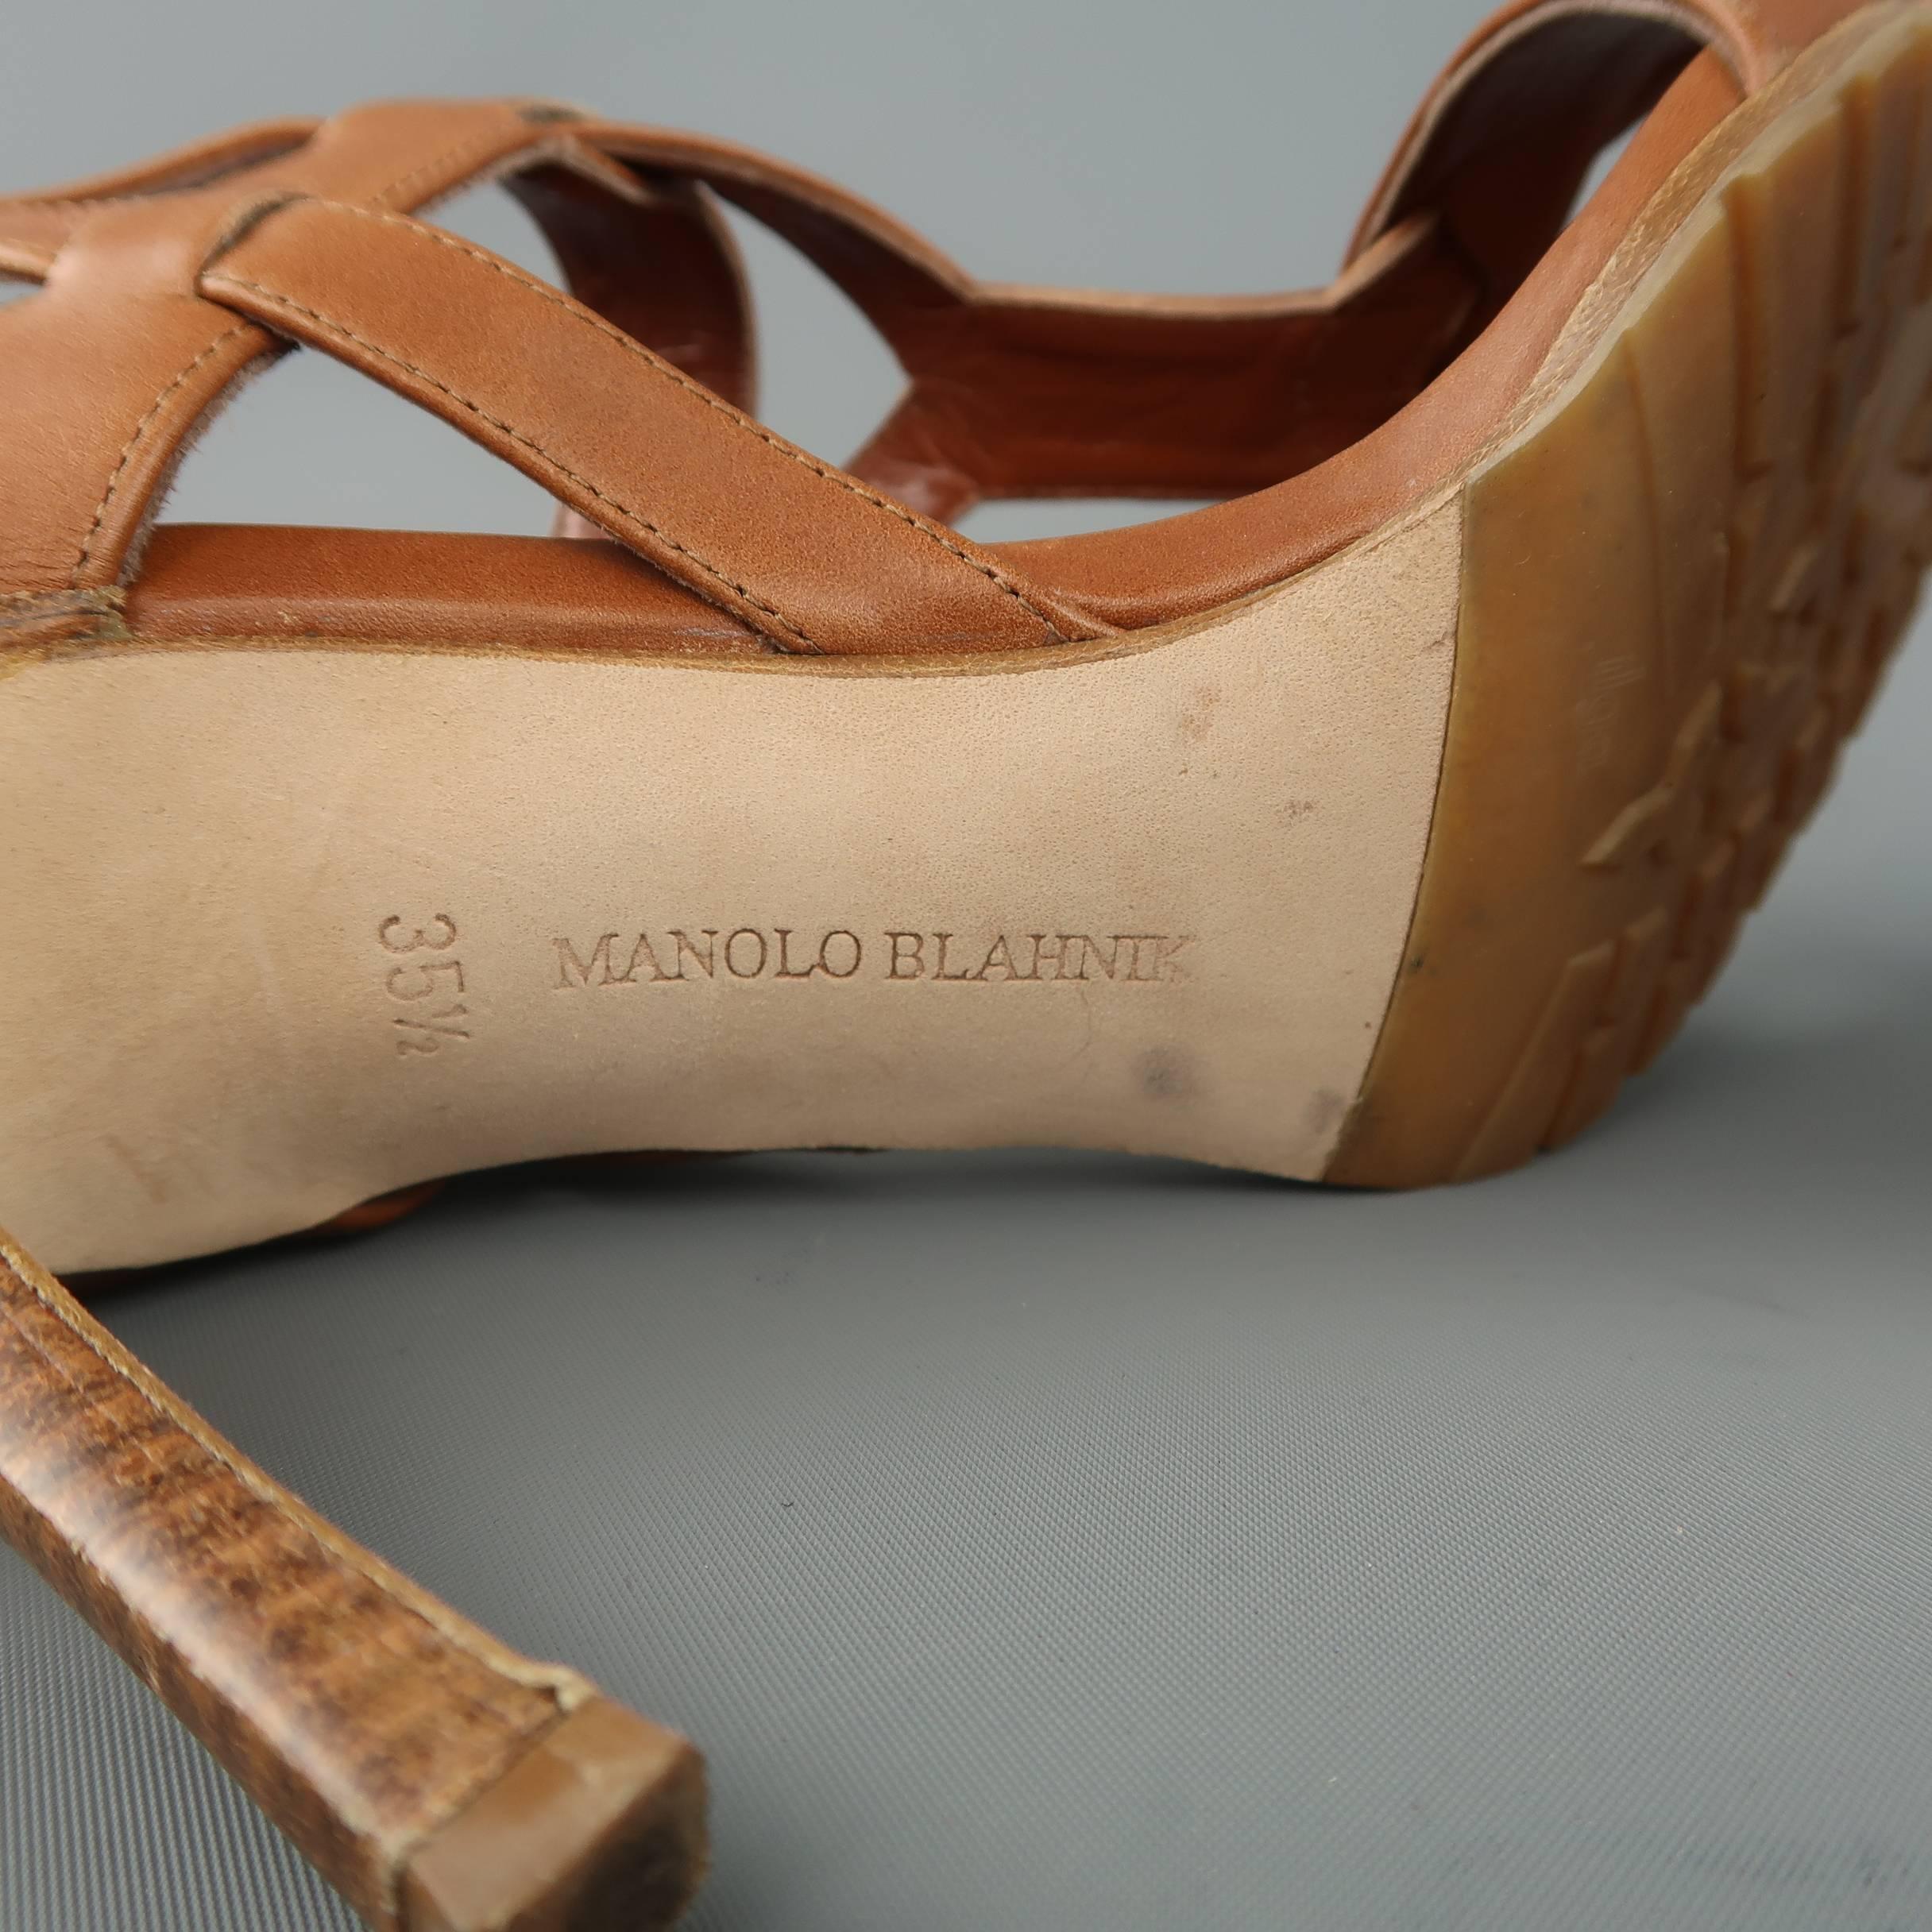 MANOLO BLAHNIK 5.5 Tan Leather Strappy Harness Cork Sole Heels Sandals 1